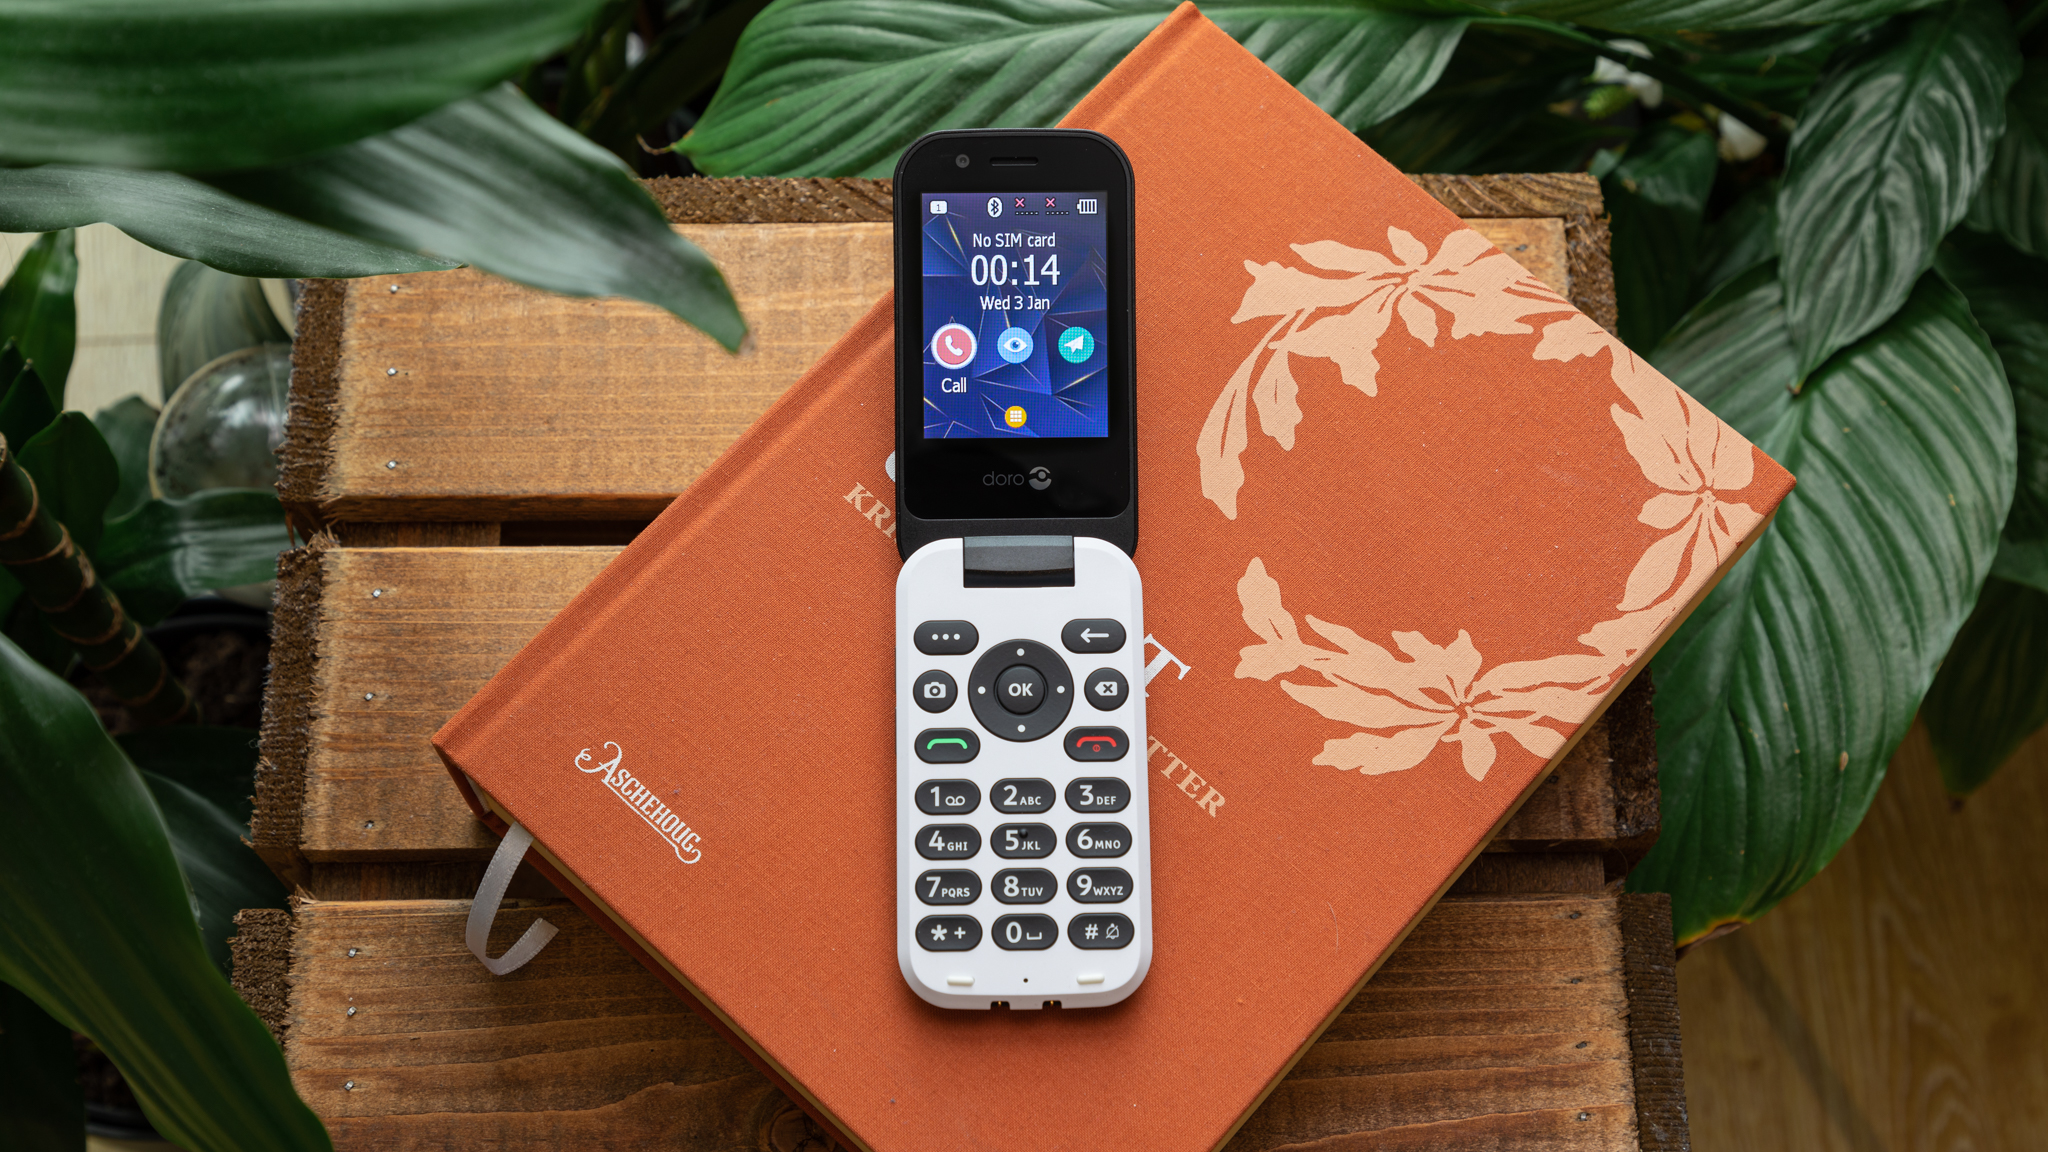 Revisión de Doro 7030: un gran teléfono con funciones para personas mayores